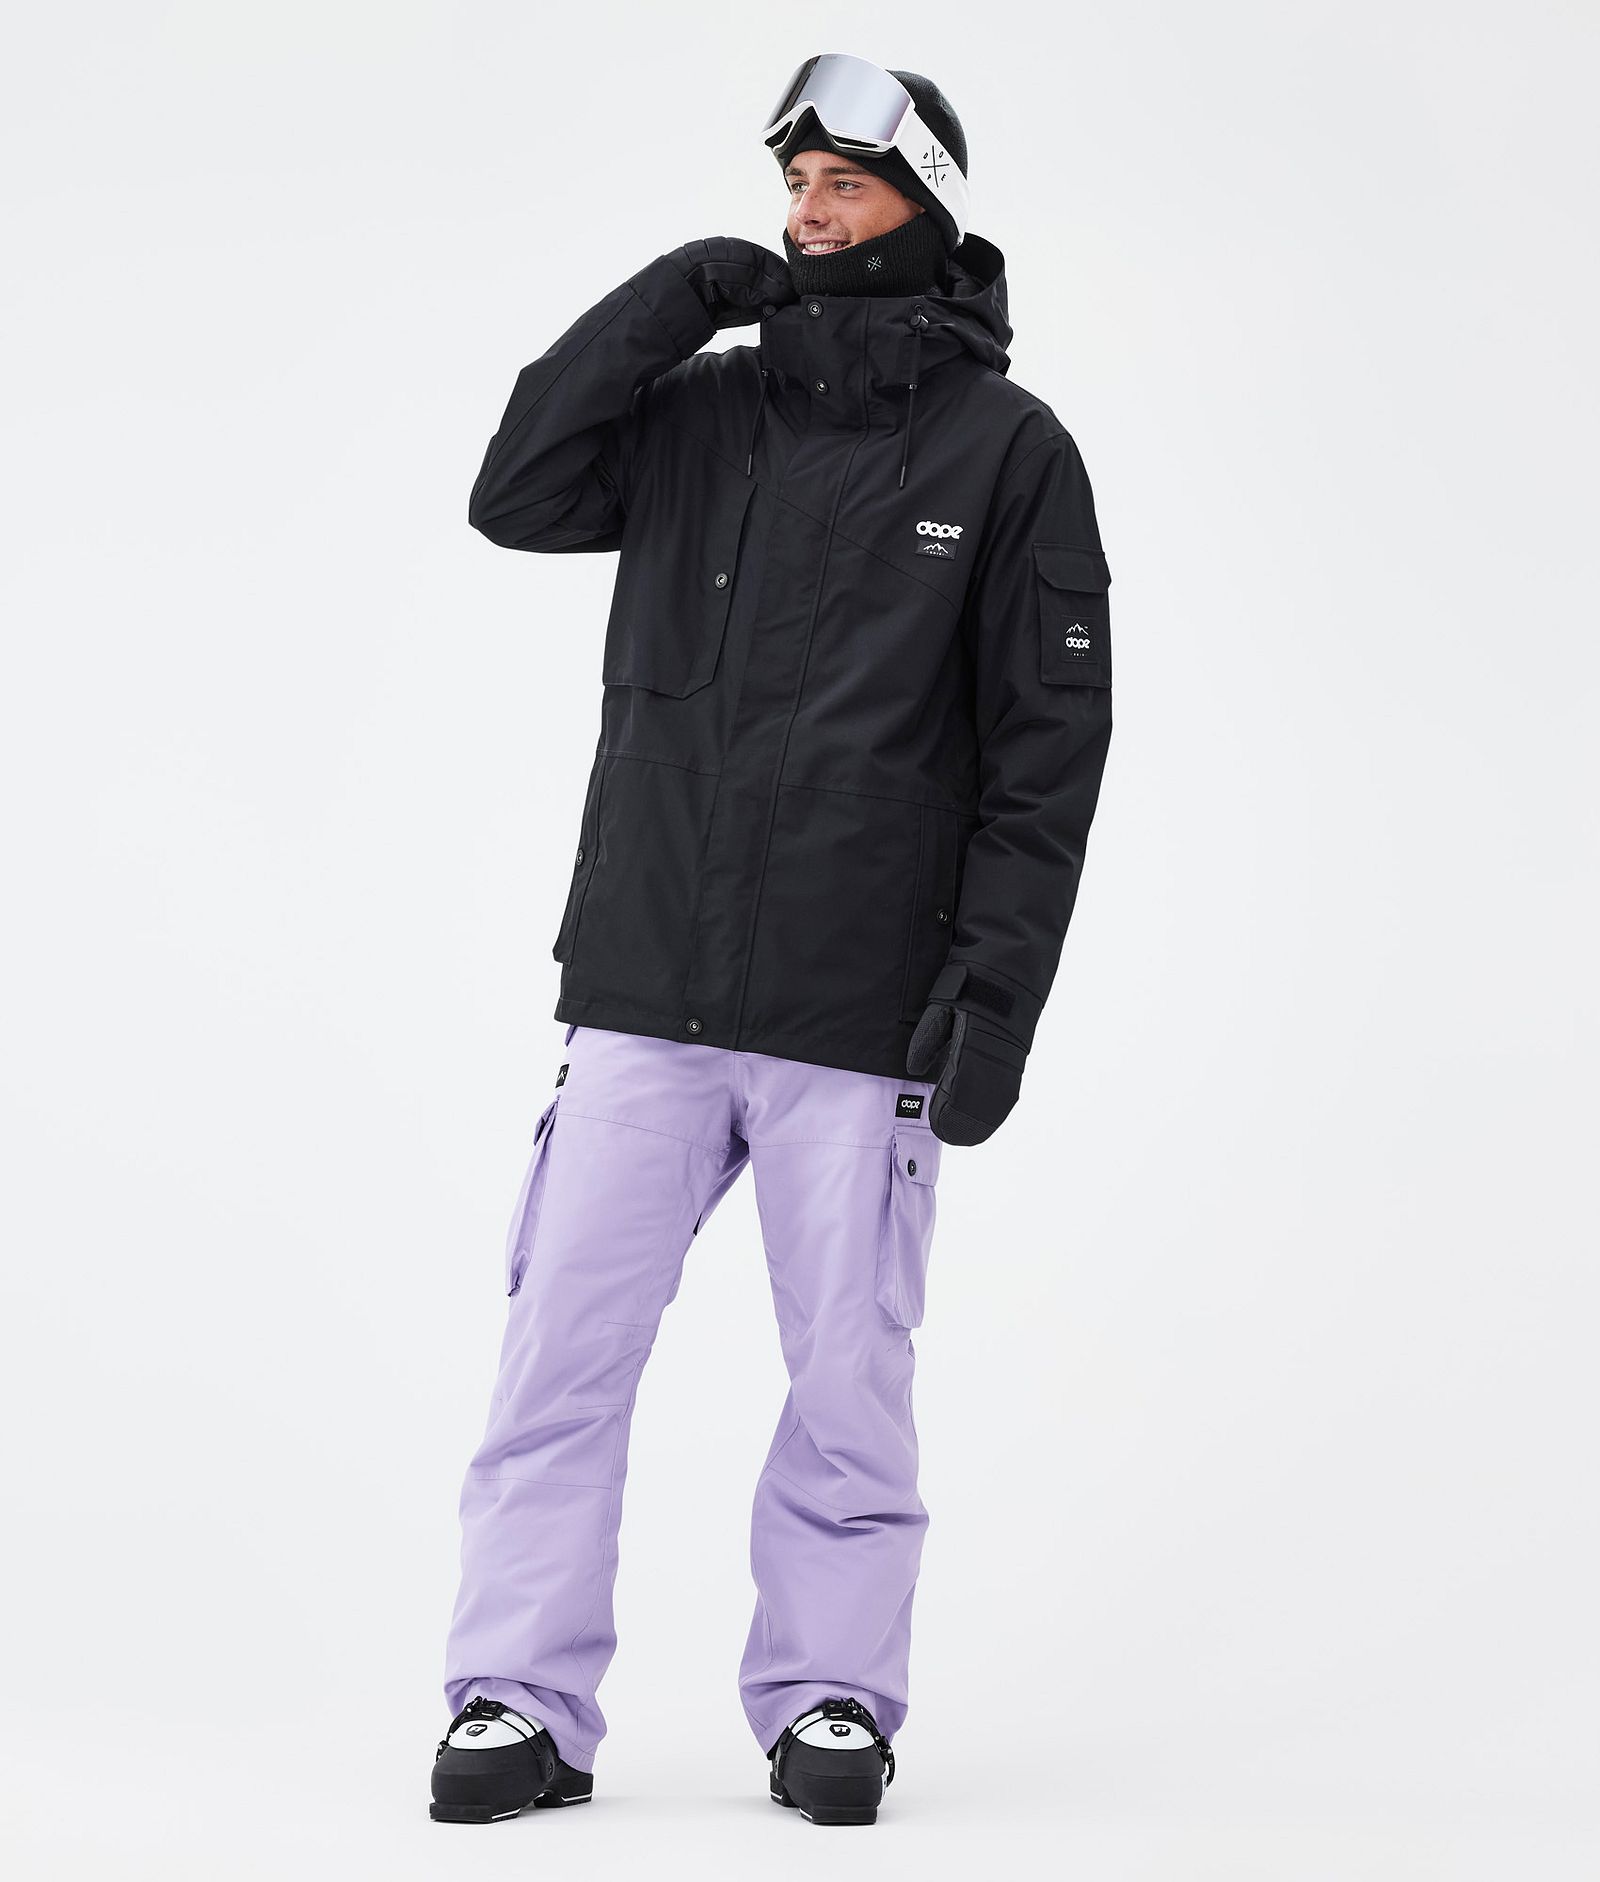 Iconic スキーパンツ メンズ Faded Violet